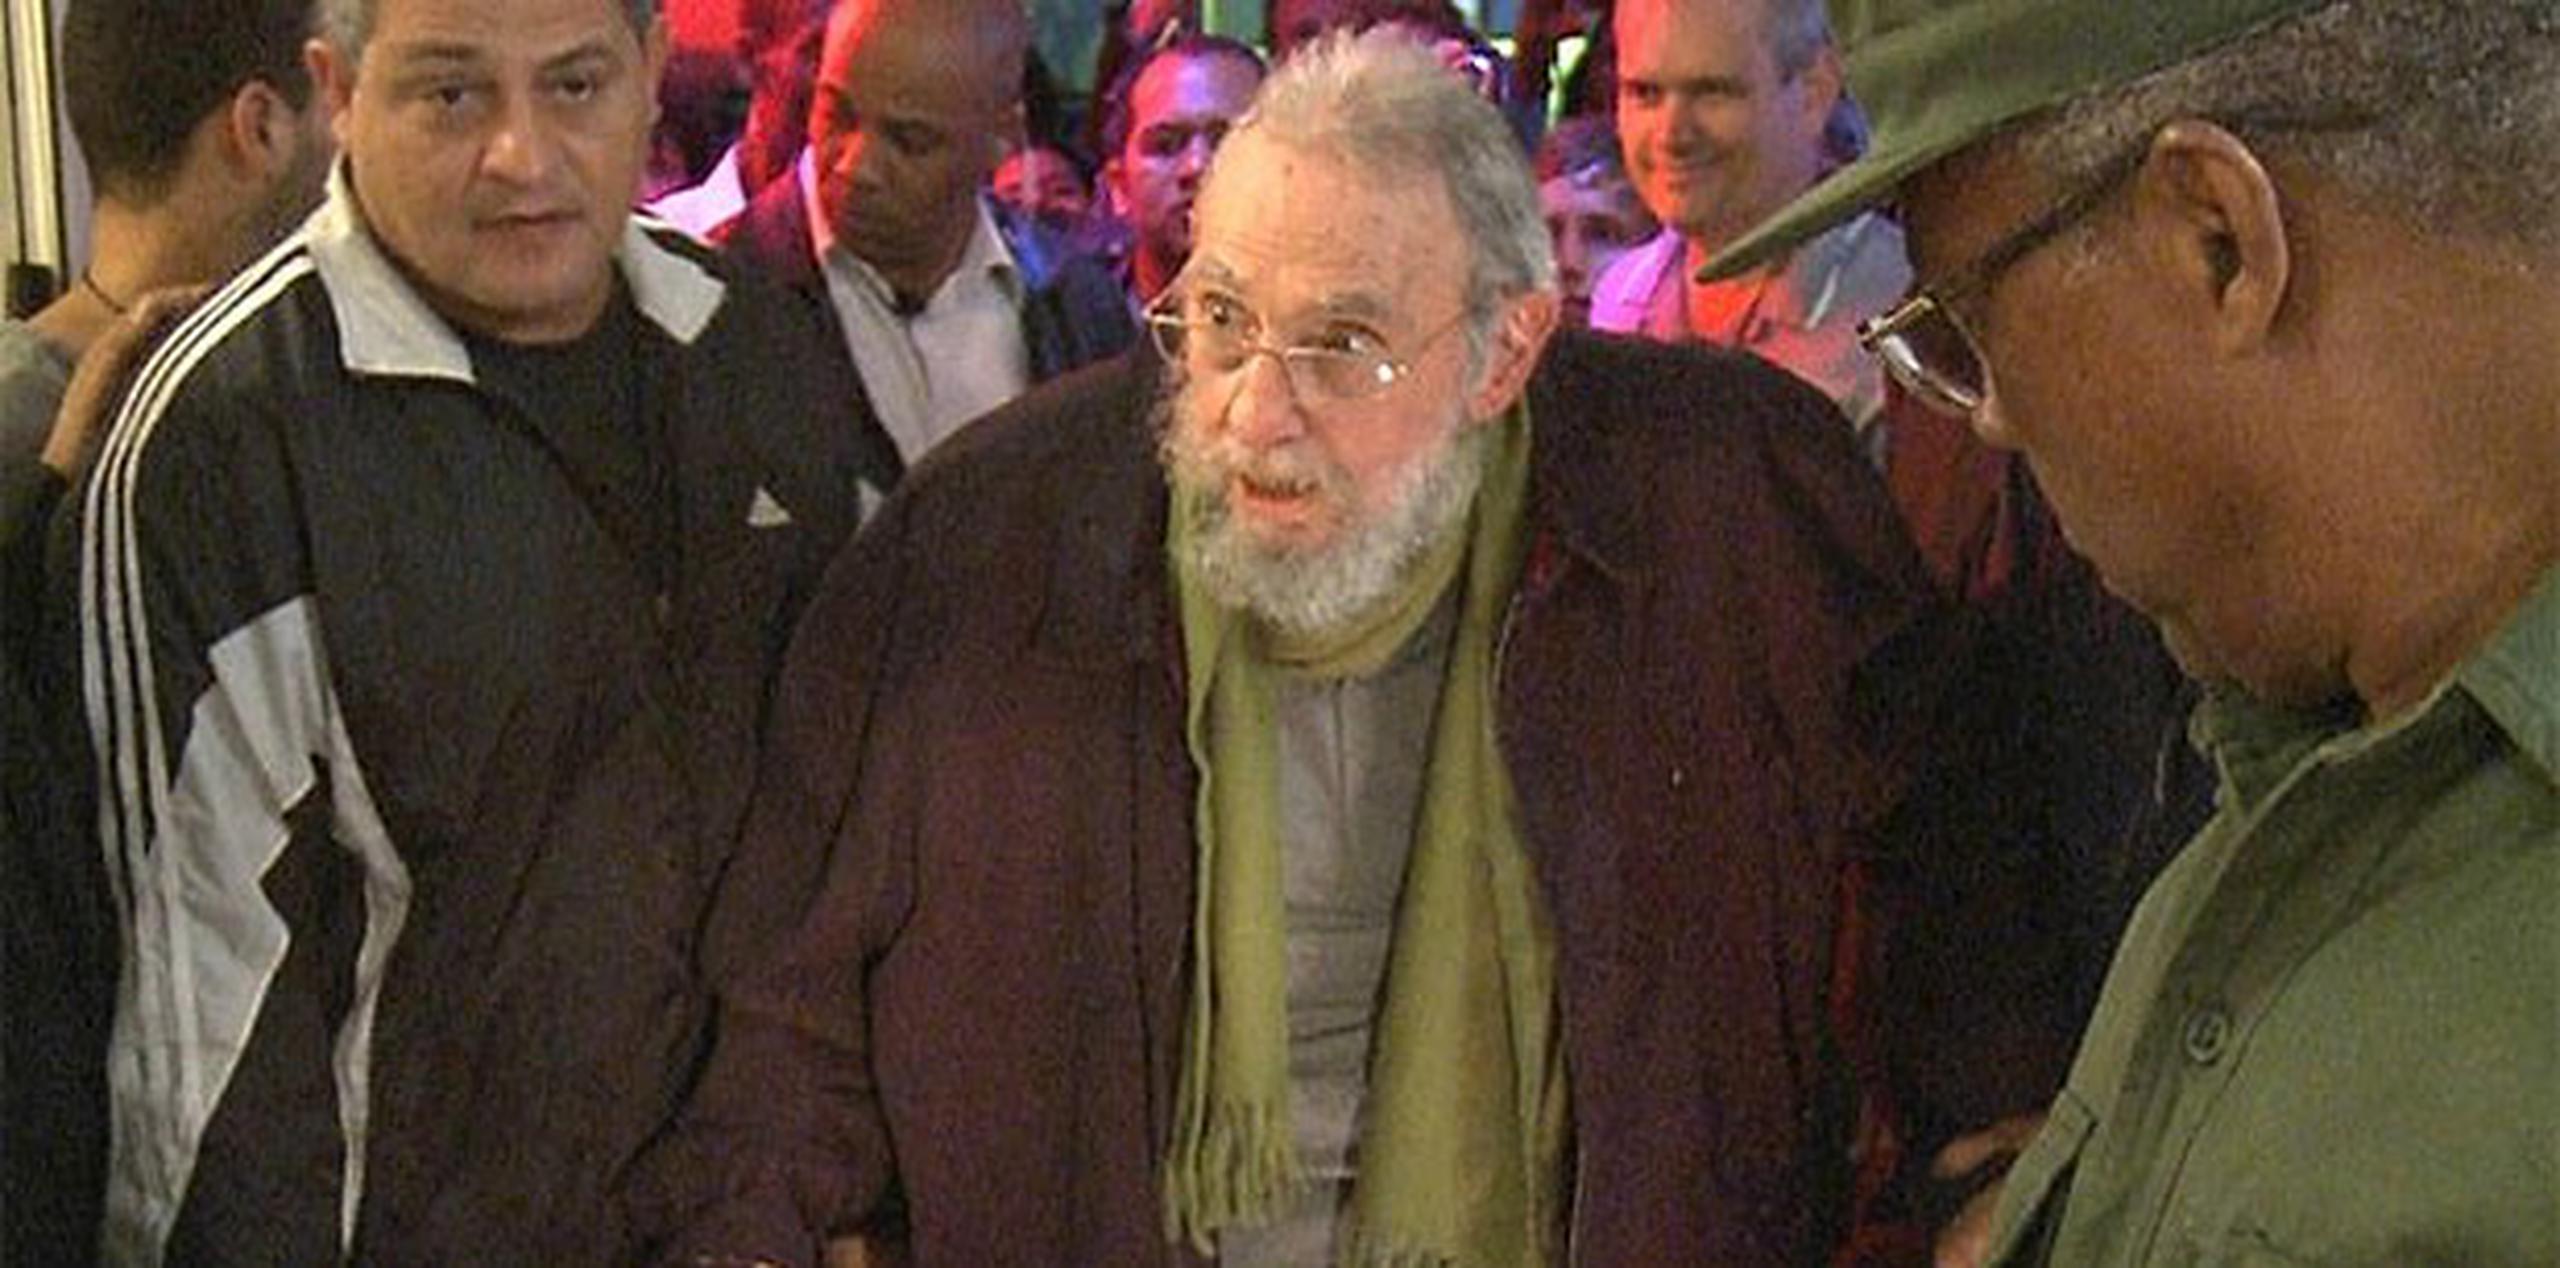 La última aparición en público de Fidel Castro fue en enero pasado, cuando acudió a la inauguración de un estudio de arte en La Habana.(Archivo)